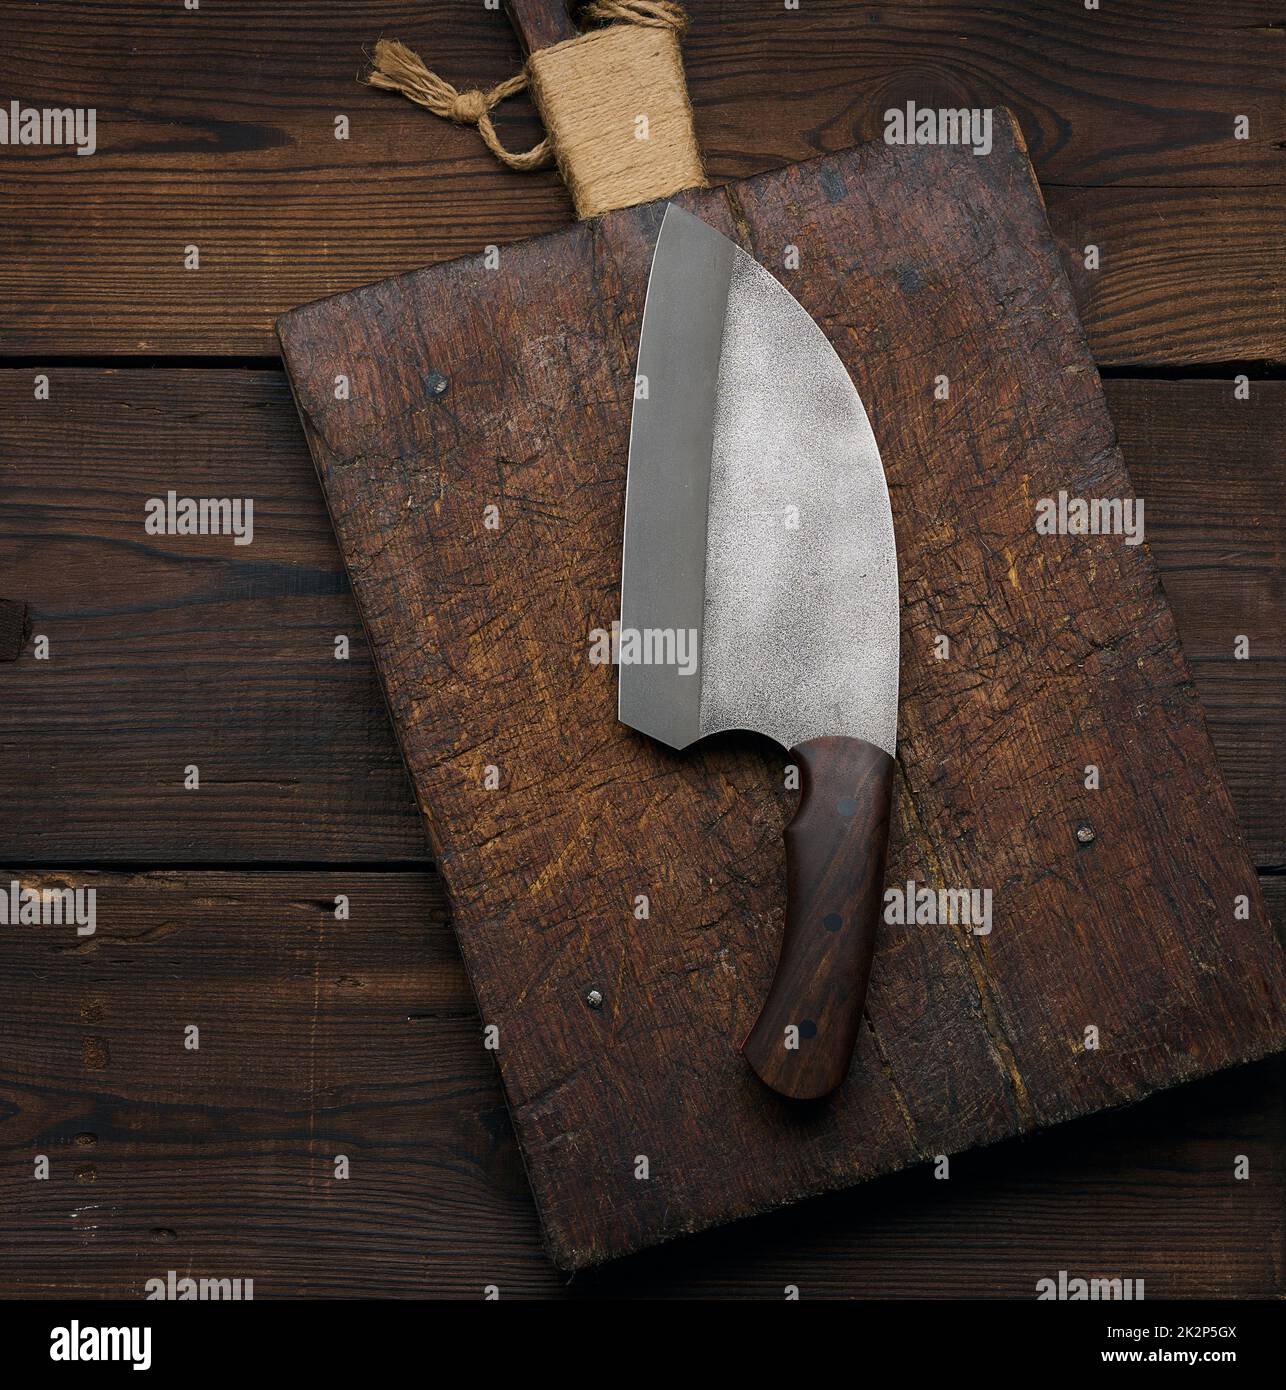 Cuchillo de cocina grande sobre una tabla de cortar de madera vacía, vista superior Foto de stock